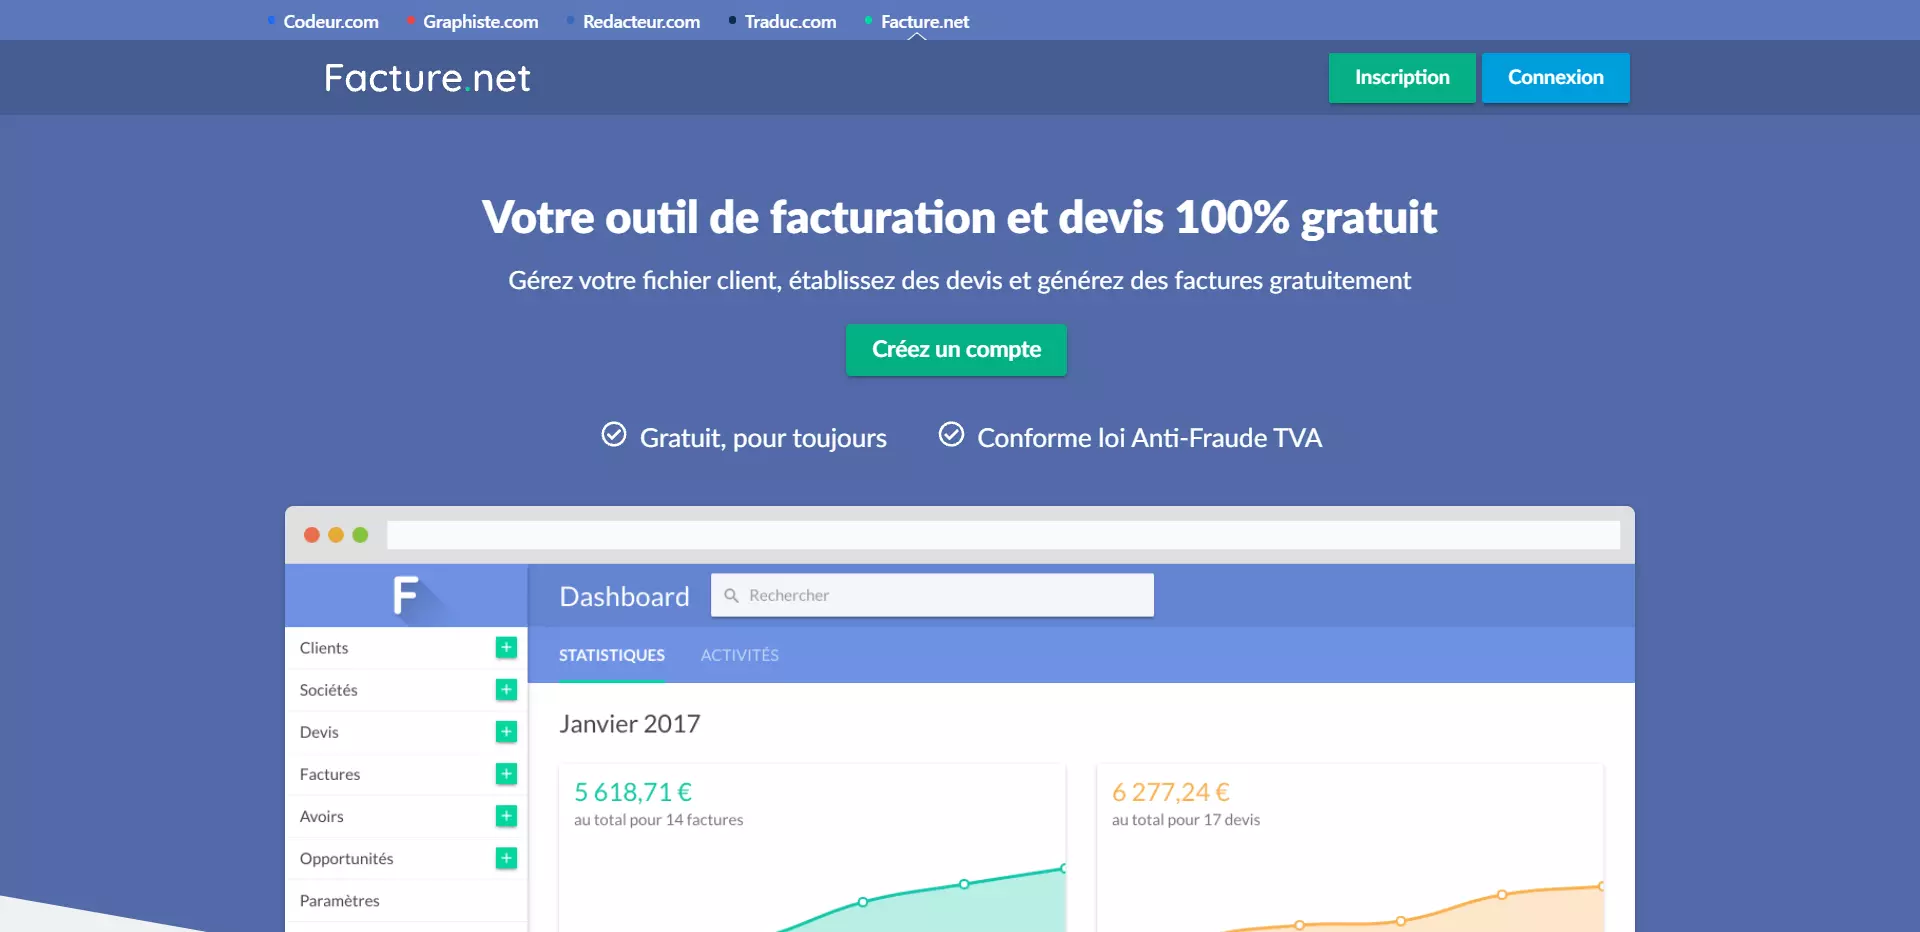 facture.net